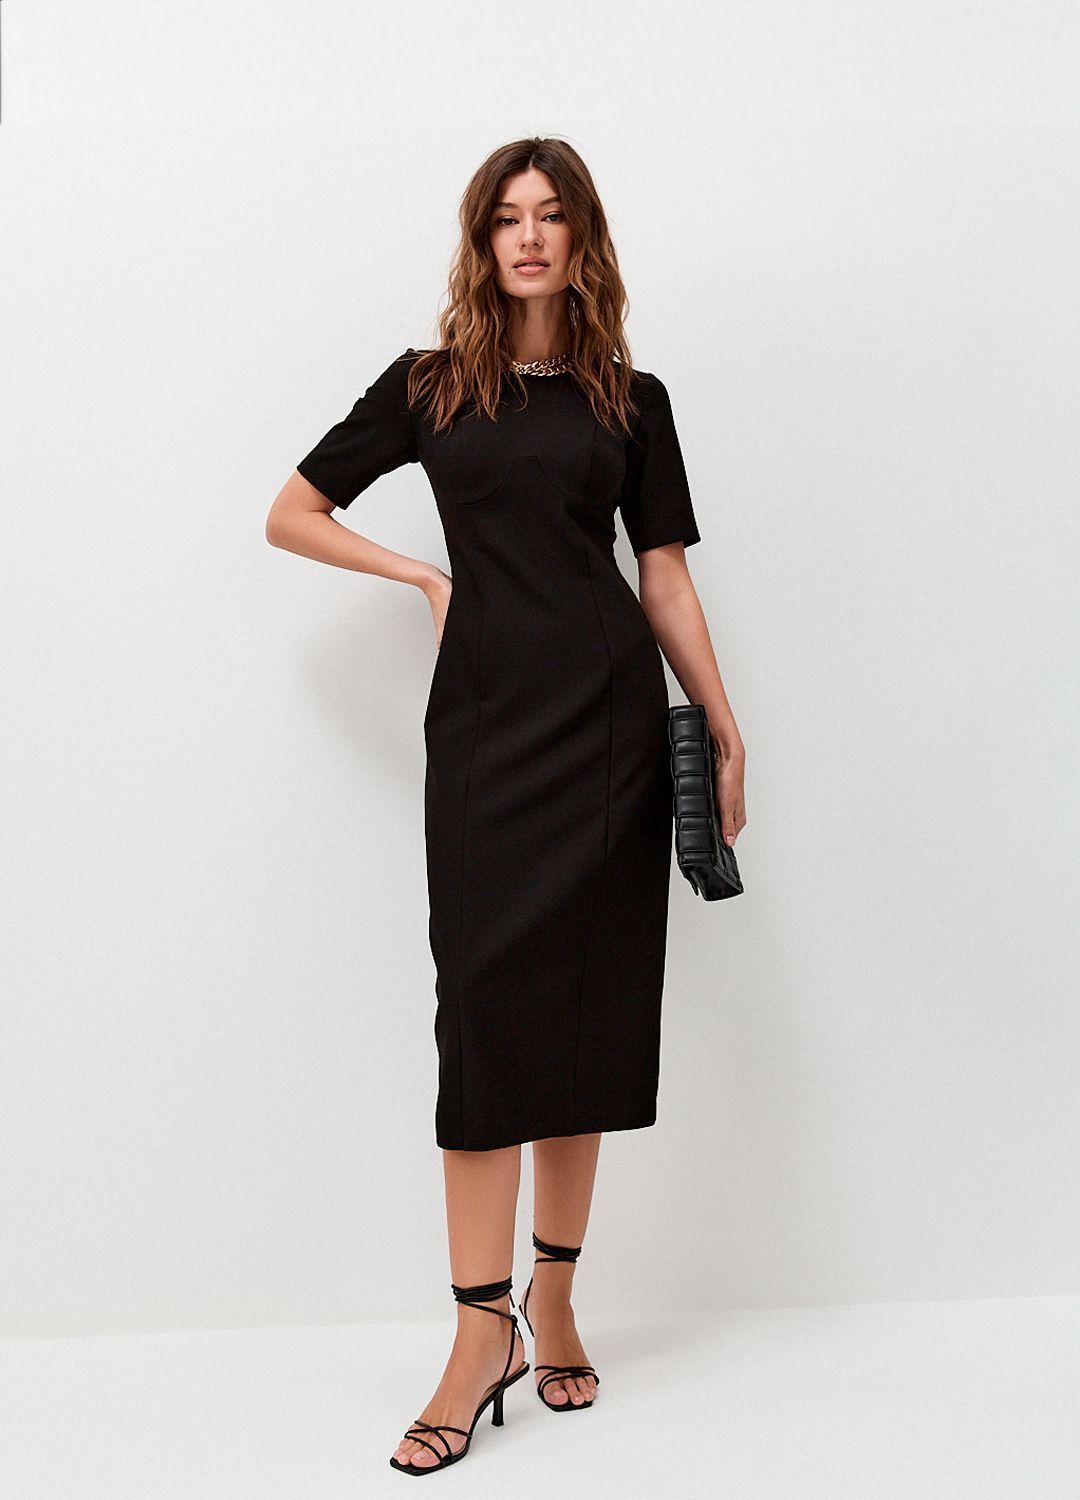 Платье футляр с коротким рукавом черное, купить платье футляр с коротким рукавом черное 